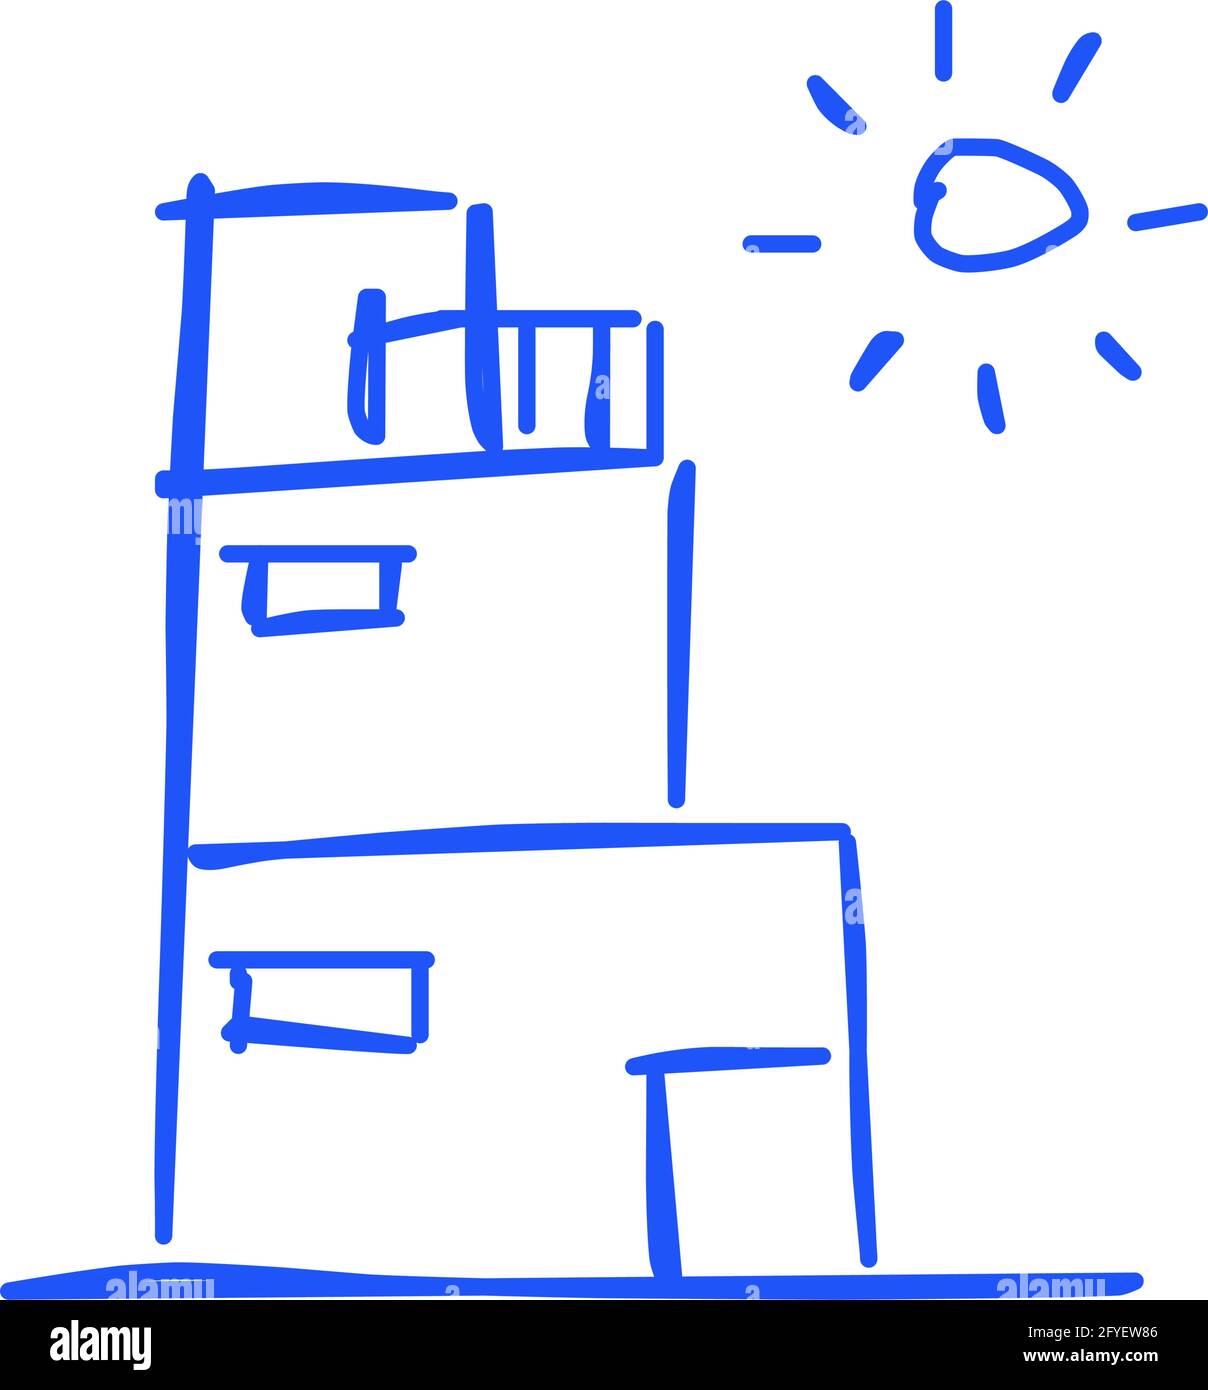 Icône de maison de l'art de ligne rugueux dans le style dessiné à la main, soleil, bleu 12 Illustration de Vecteur